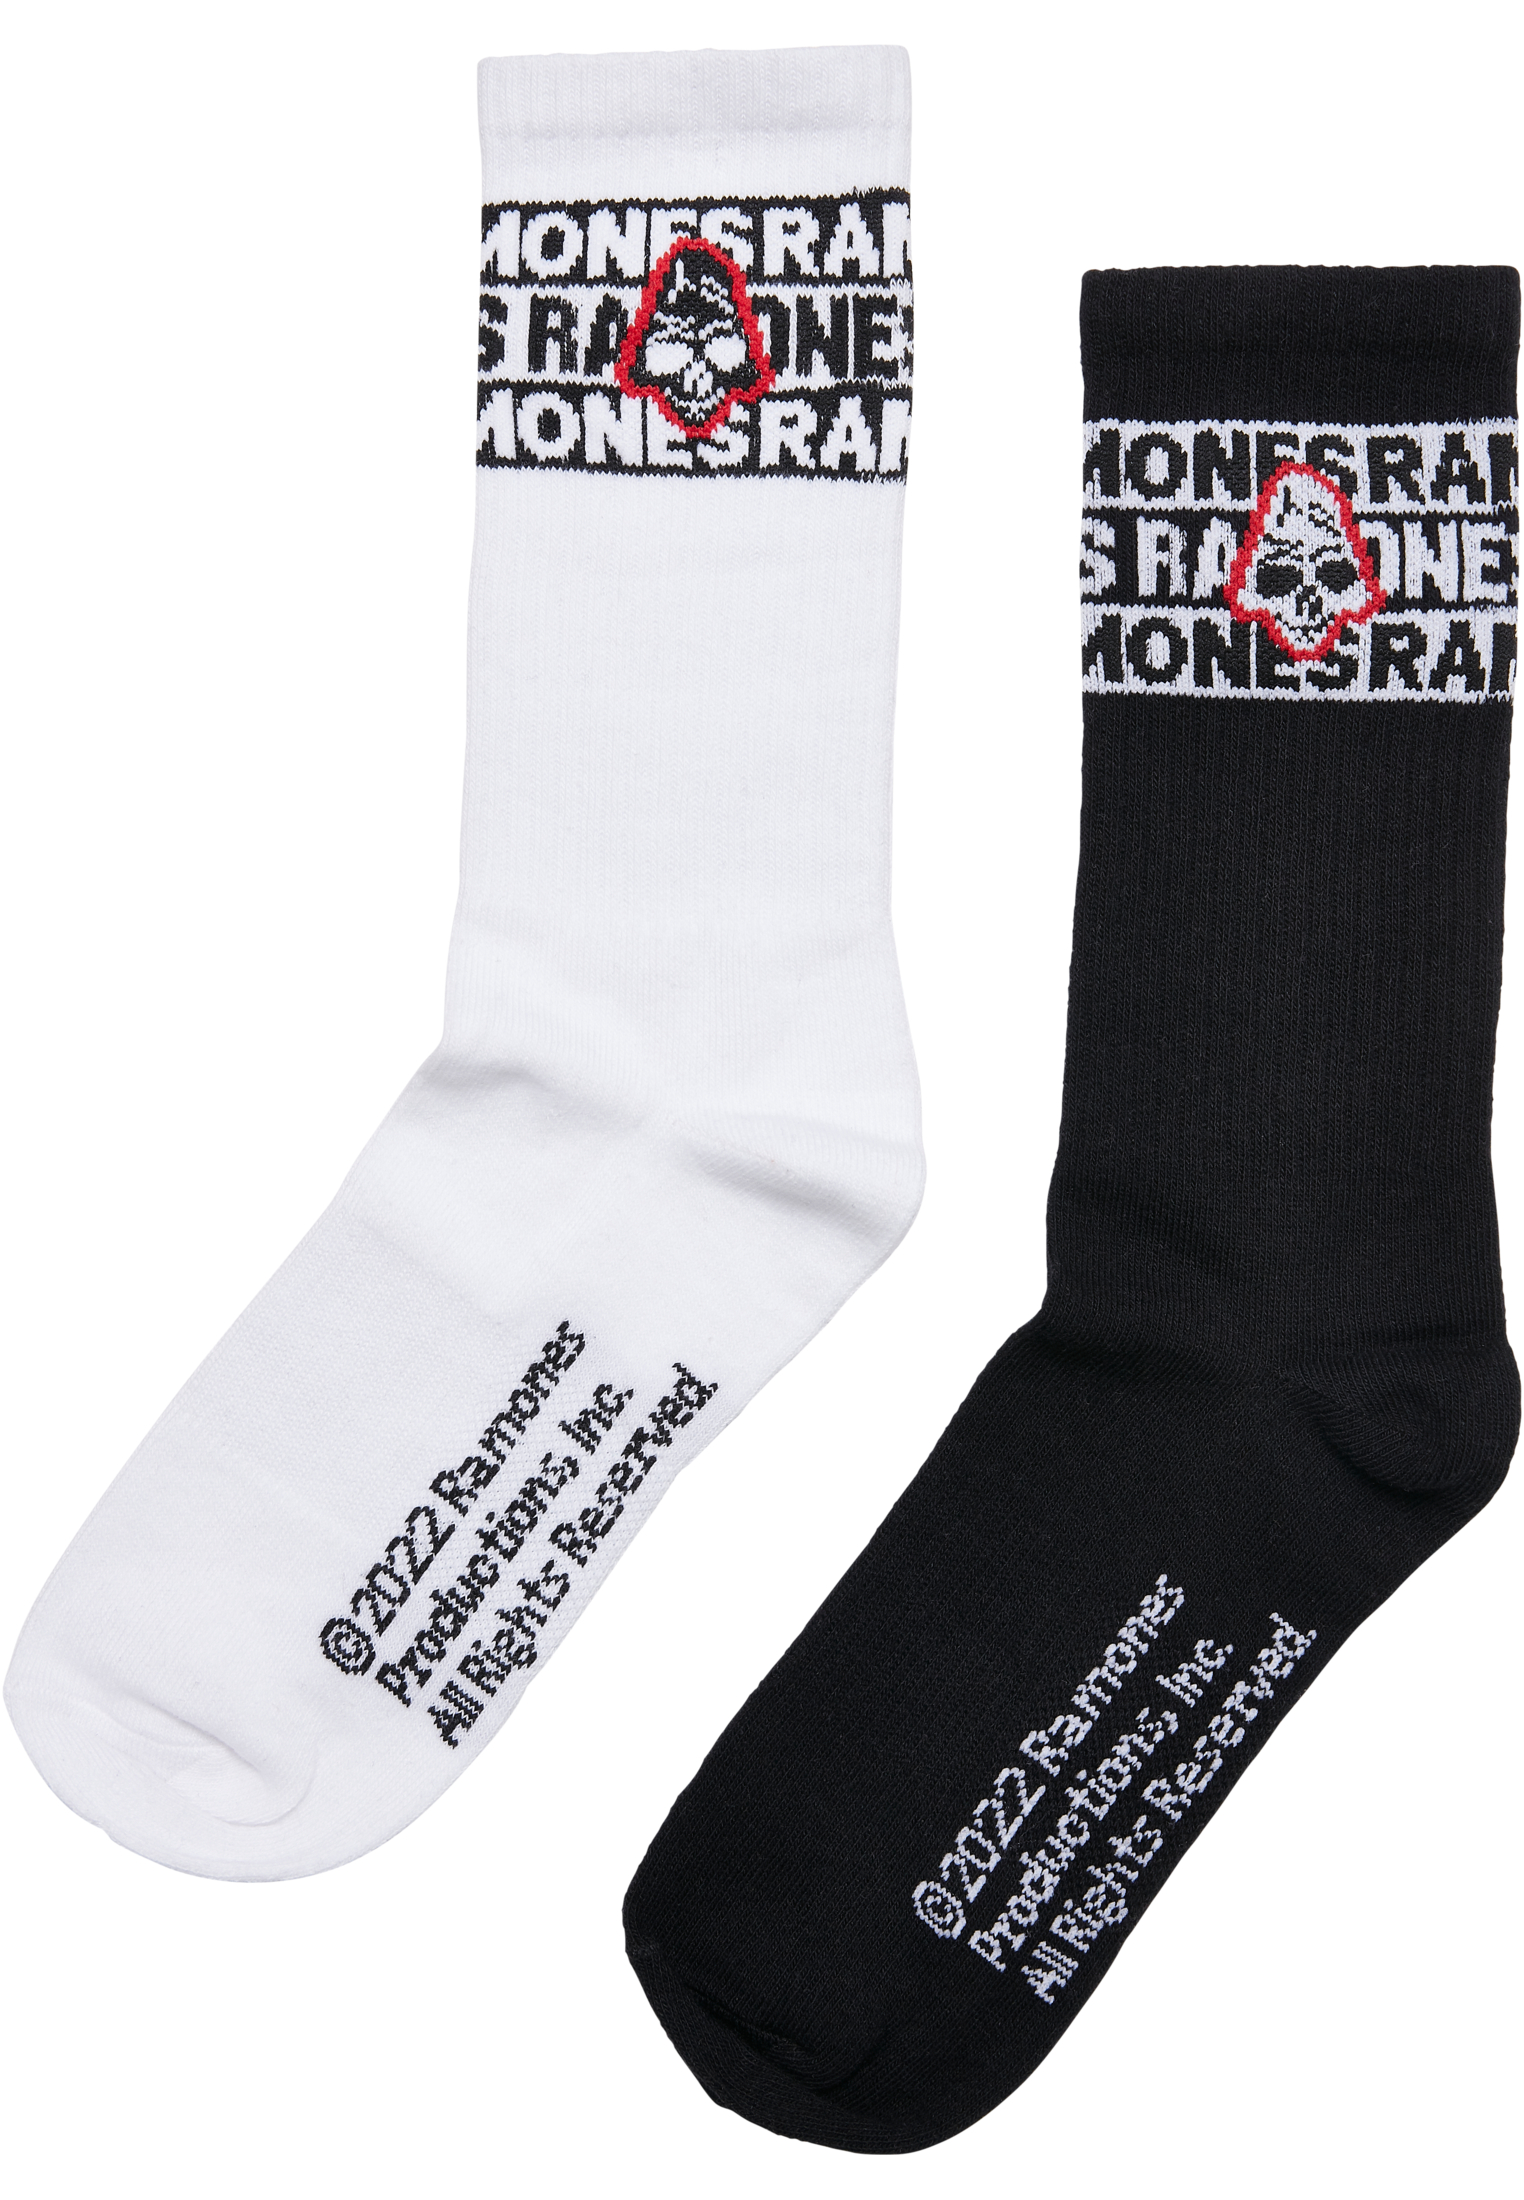  Ramones Skull Socks 2-Pack in Farbe black/white